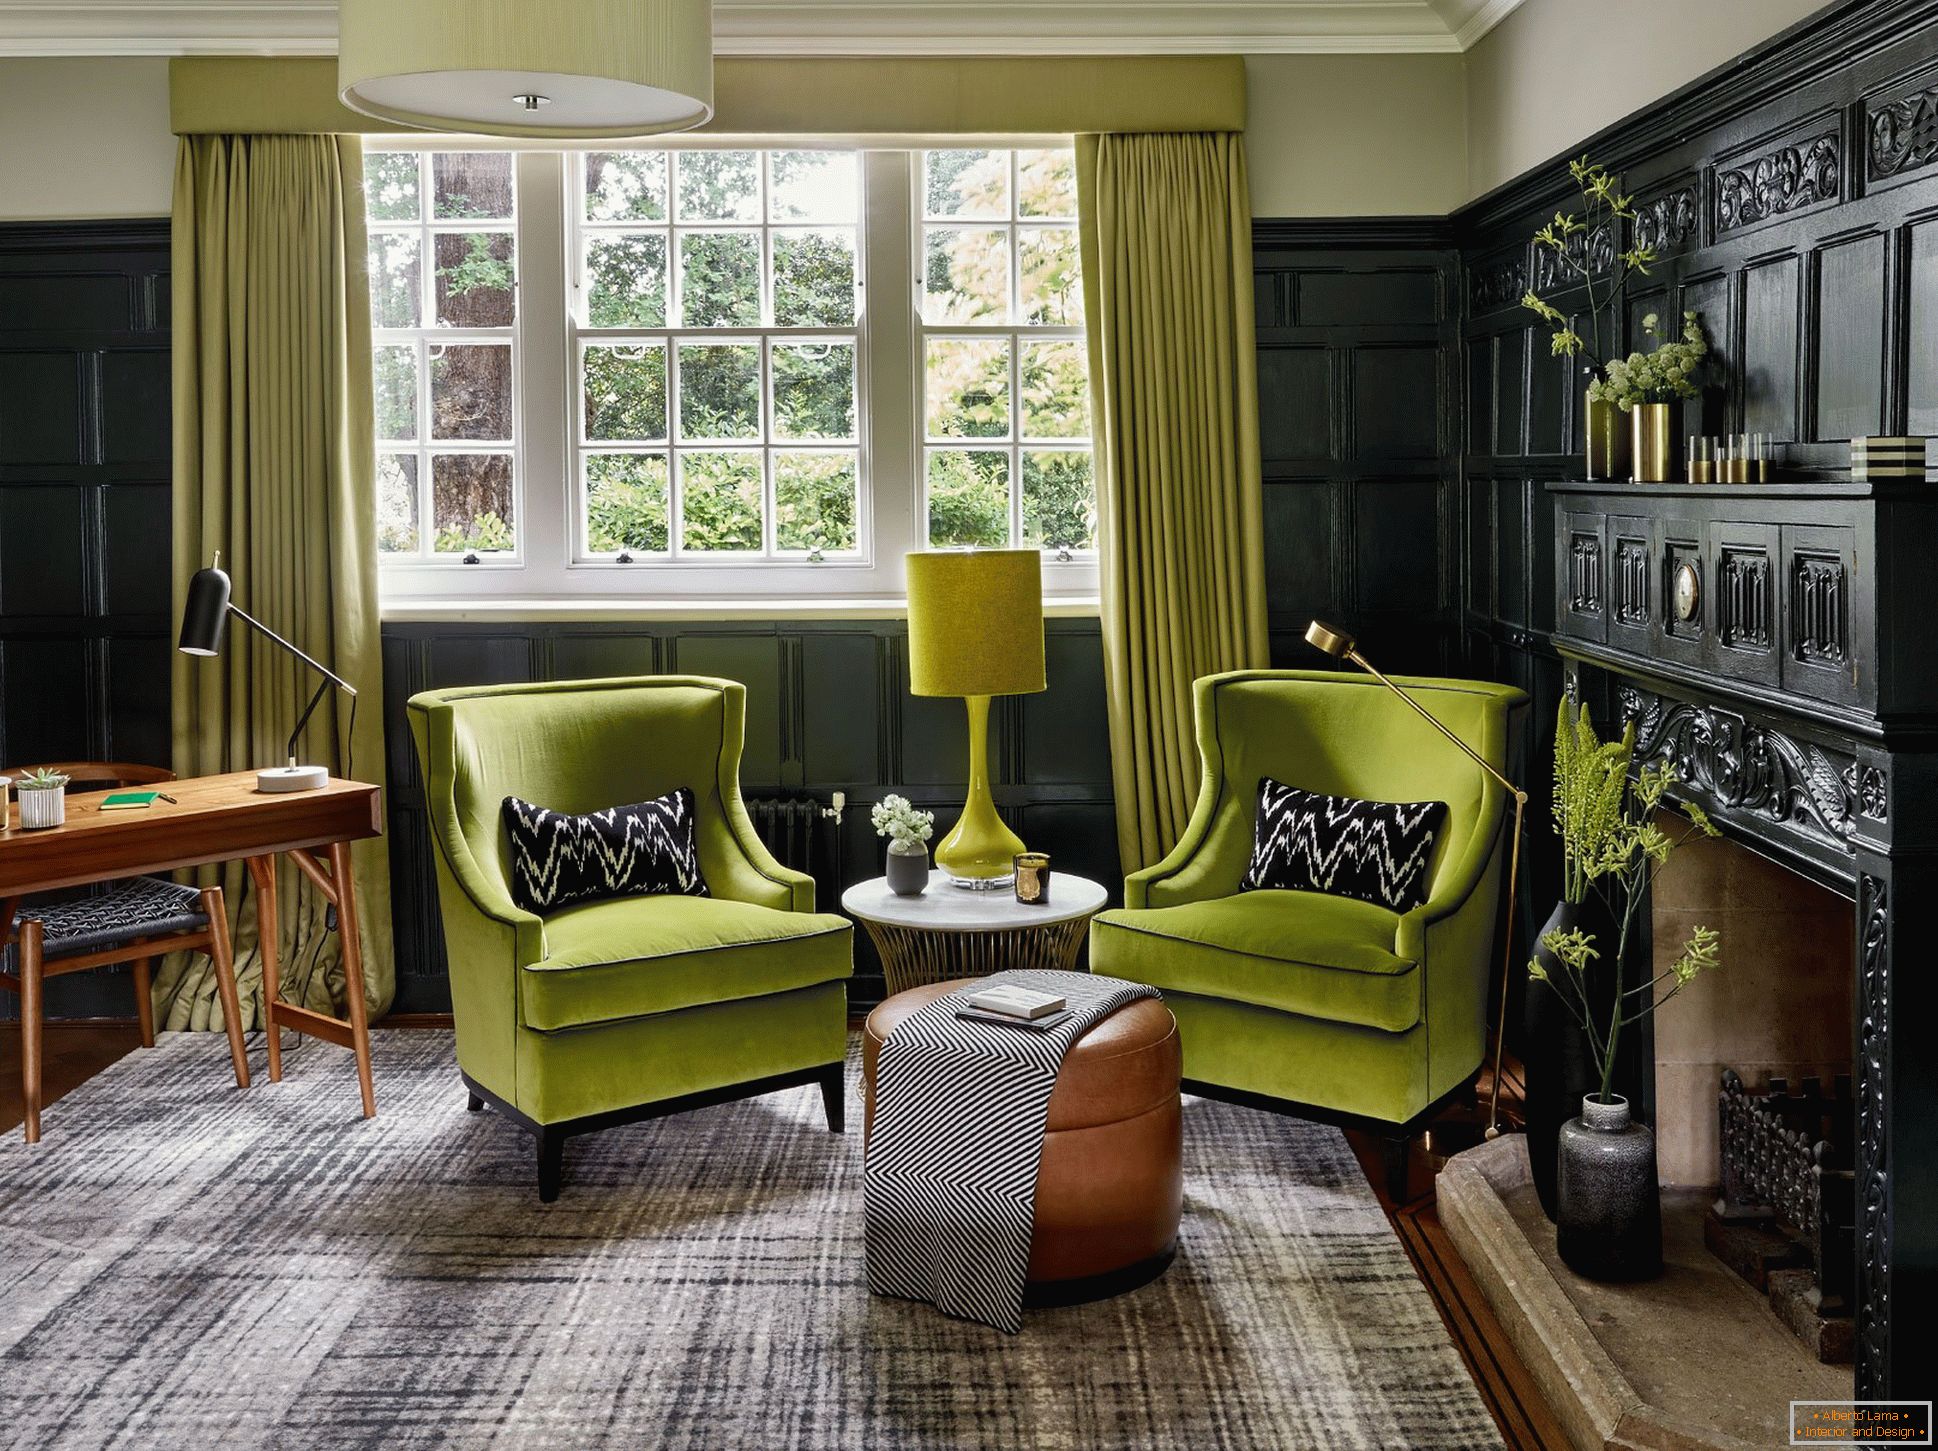 Muebles verdes tapizados en la sala de estar